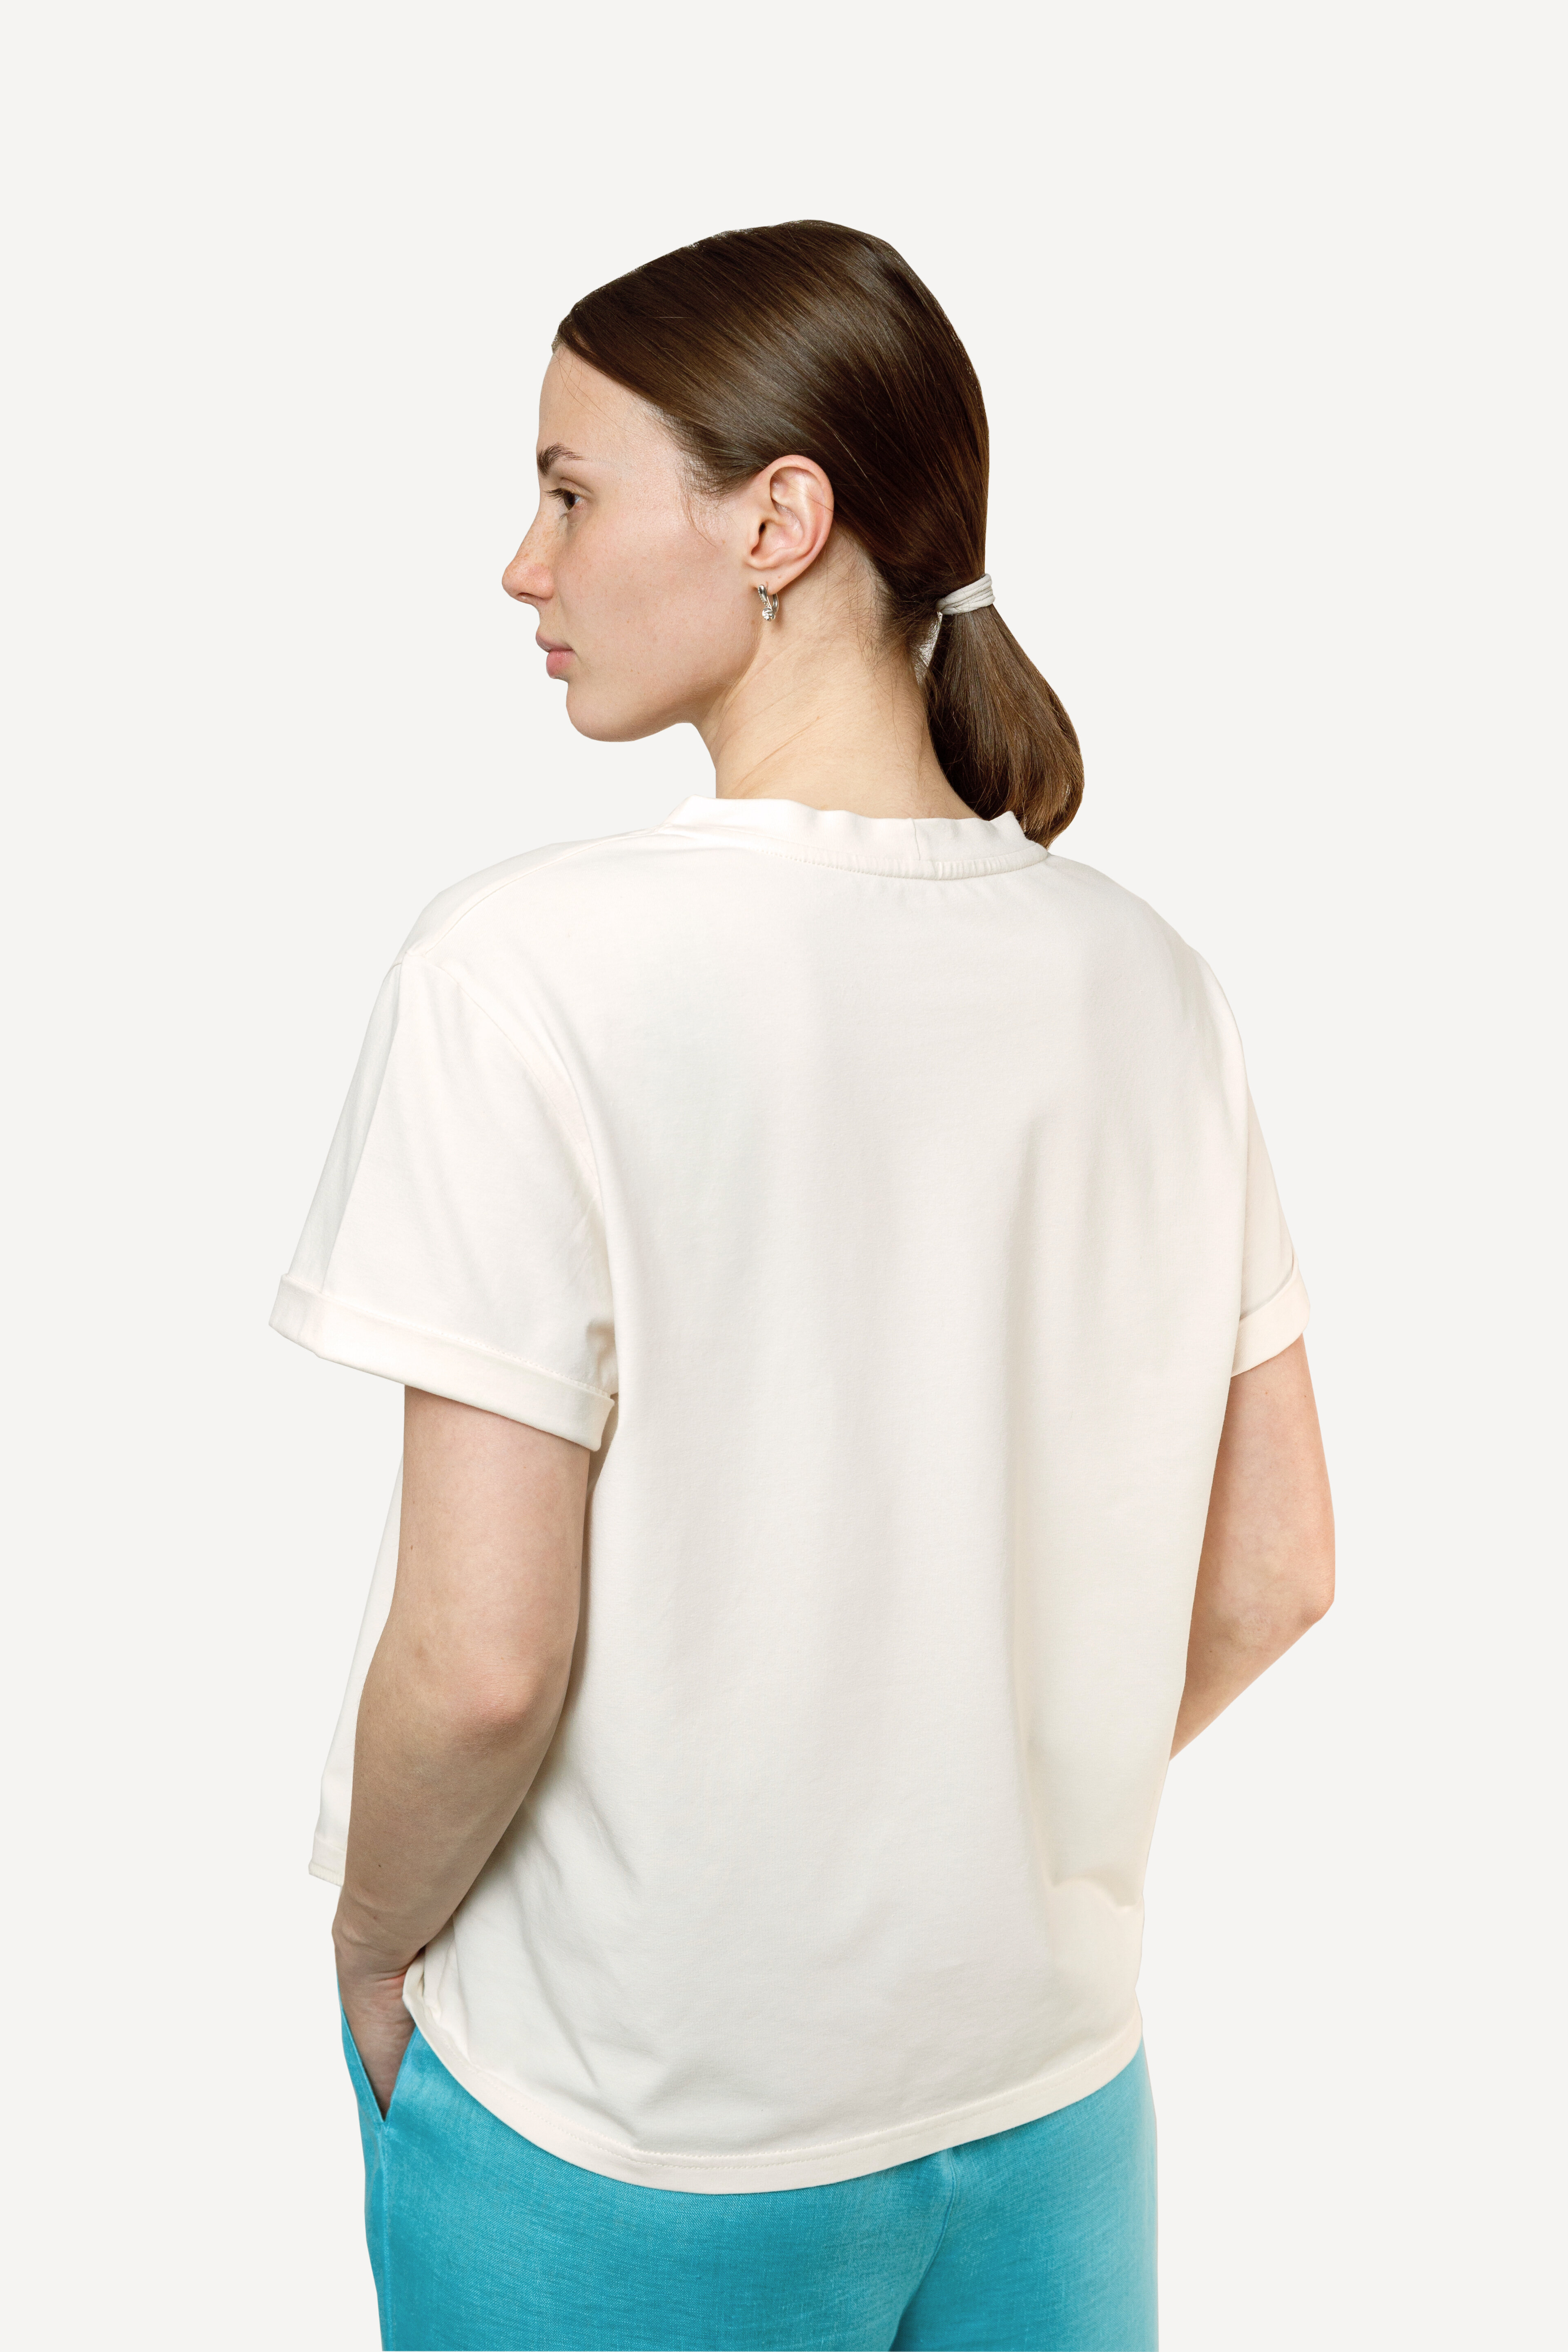 Женская футболка, размер L 46/48 , премиальный хлопок, авторский принт "Нежная Сила", цвет молоко - фотография № 3